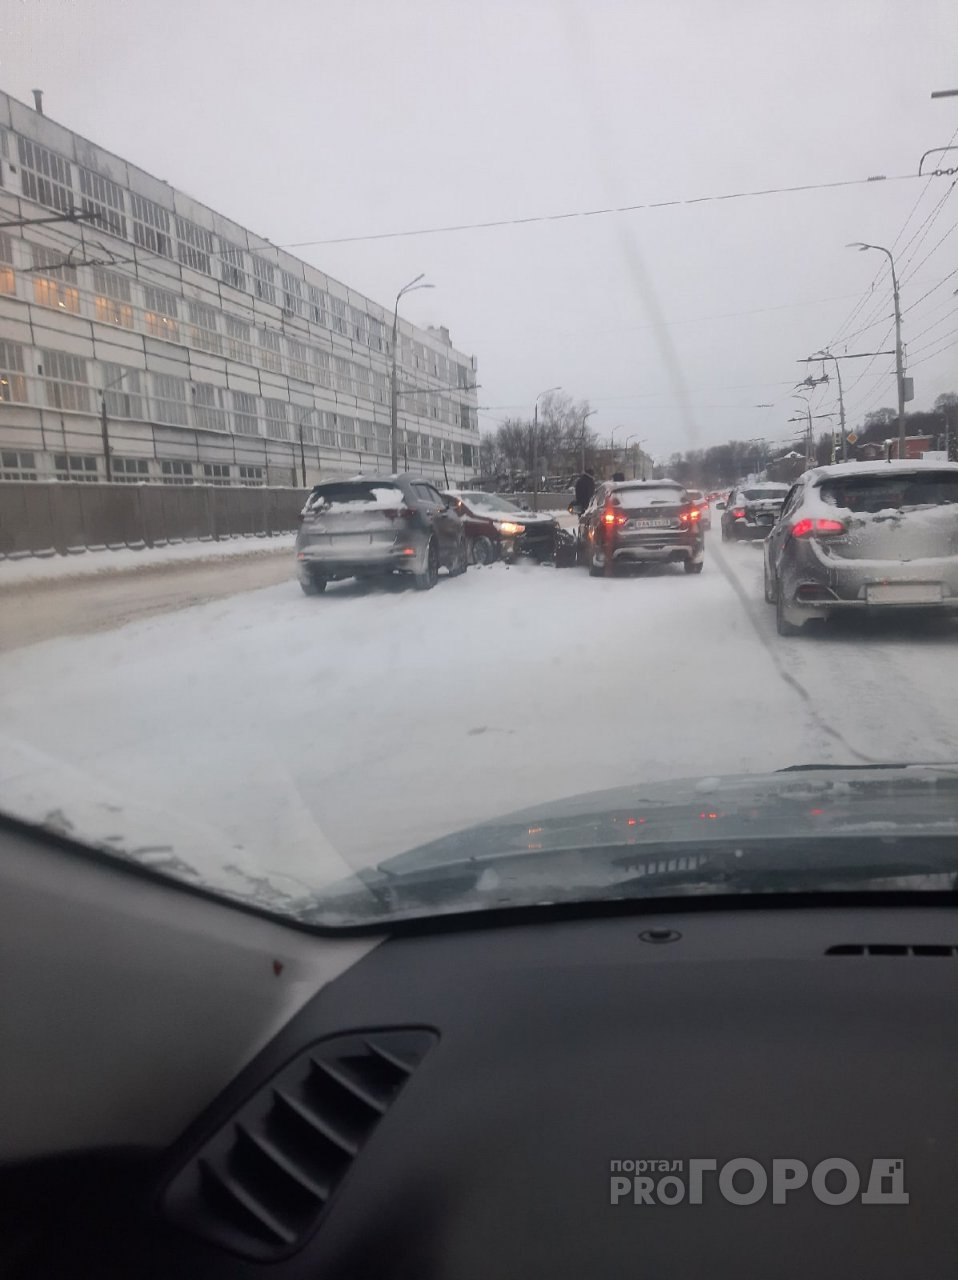 Серьезная авария во Владимире рядом с "Автоприбором" привела к пробкам